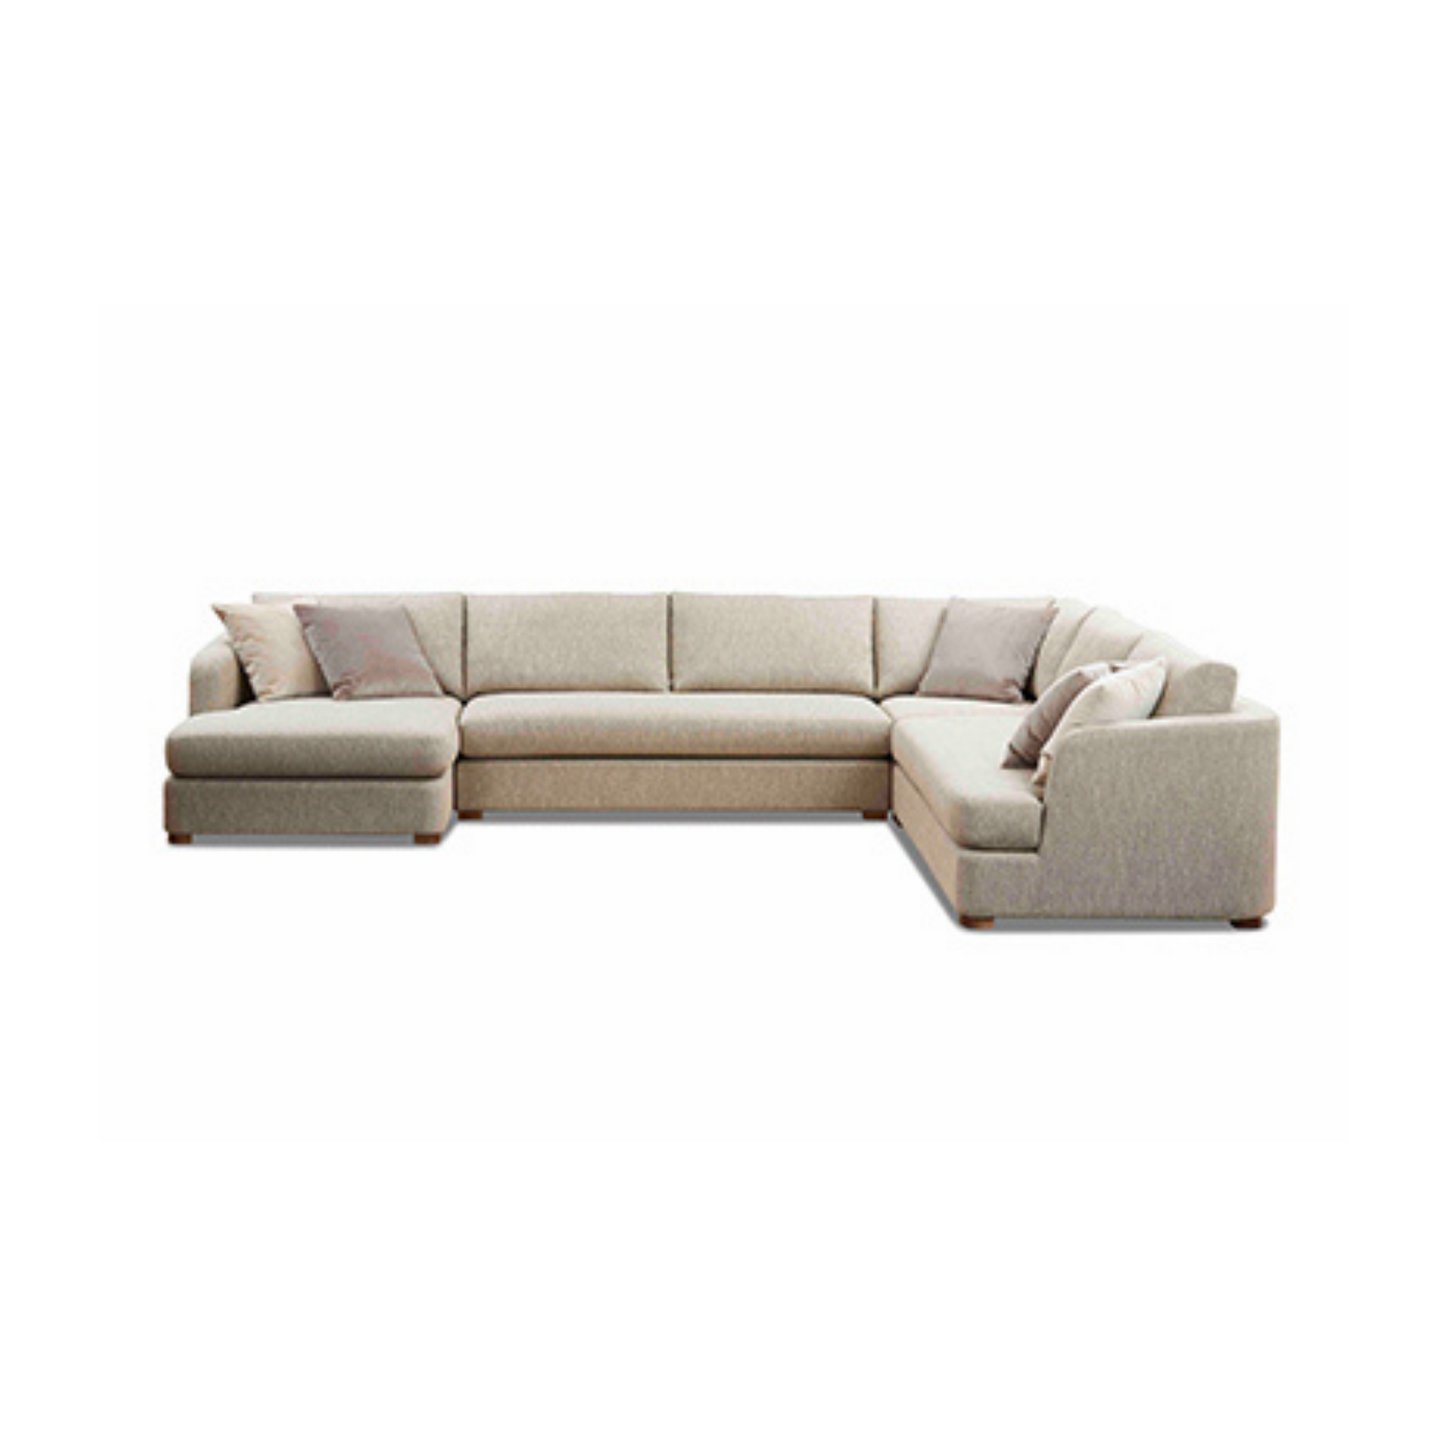 Palisades Modular Sofa by Molmic